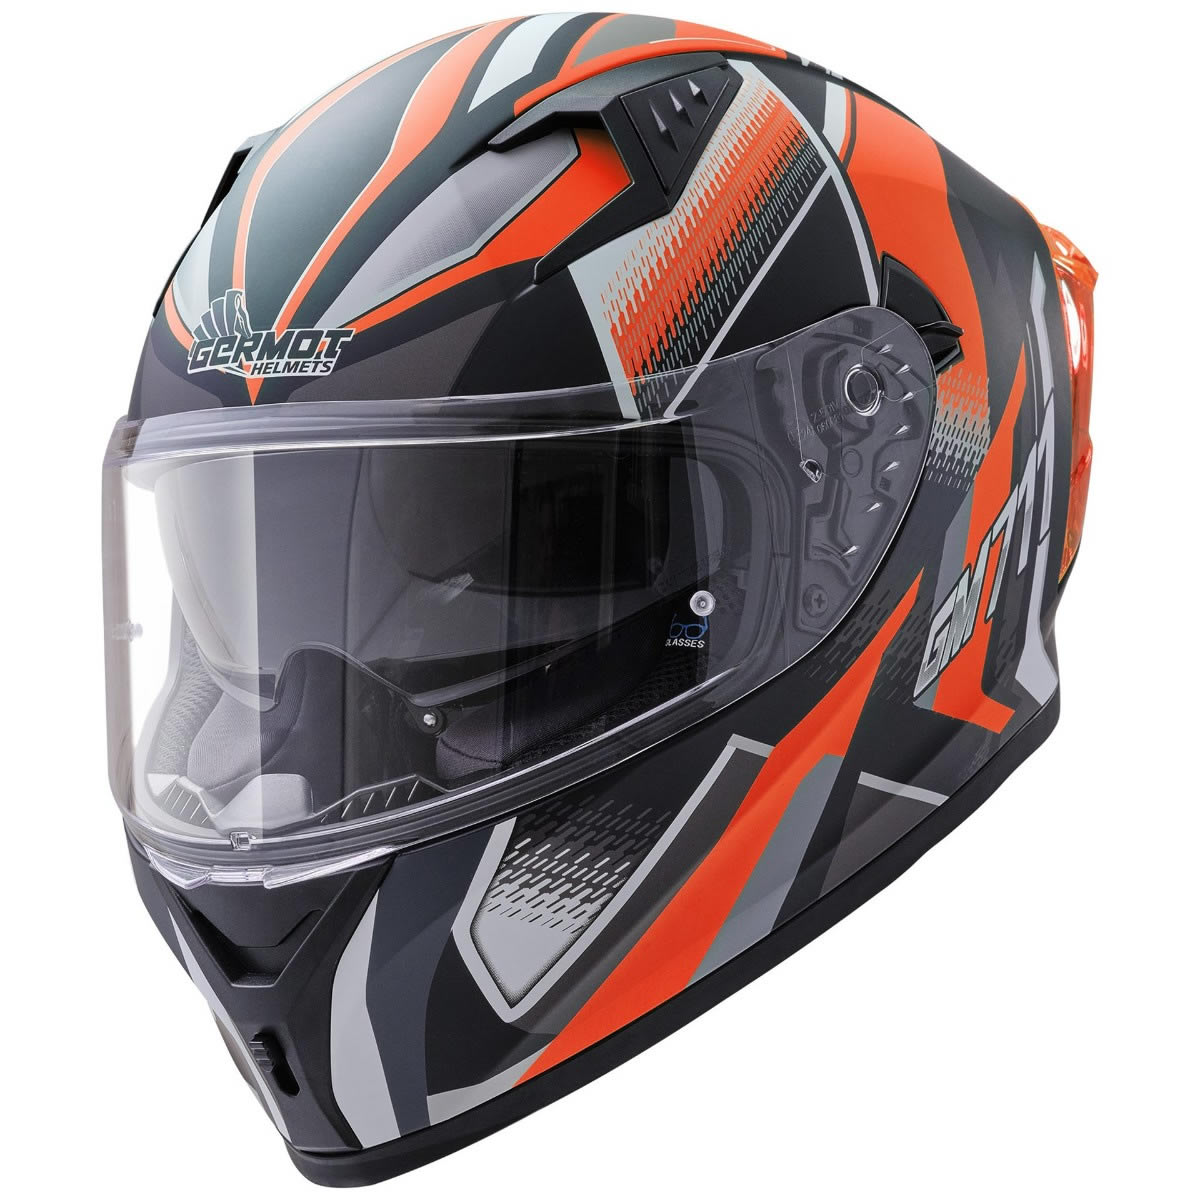 Germot GM 711 Helm, schwarz-orange matt